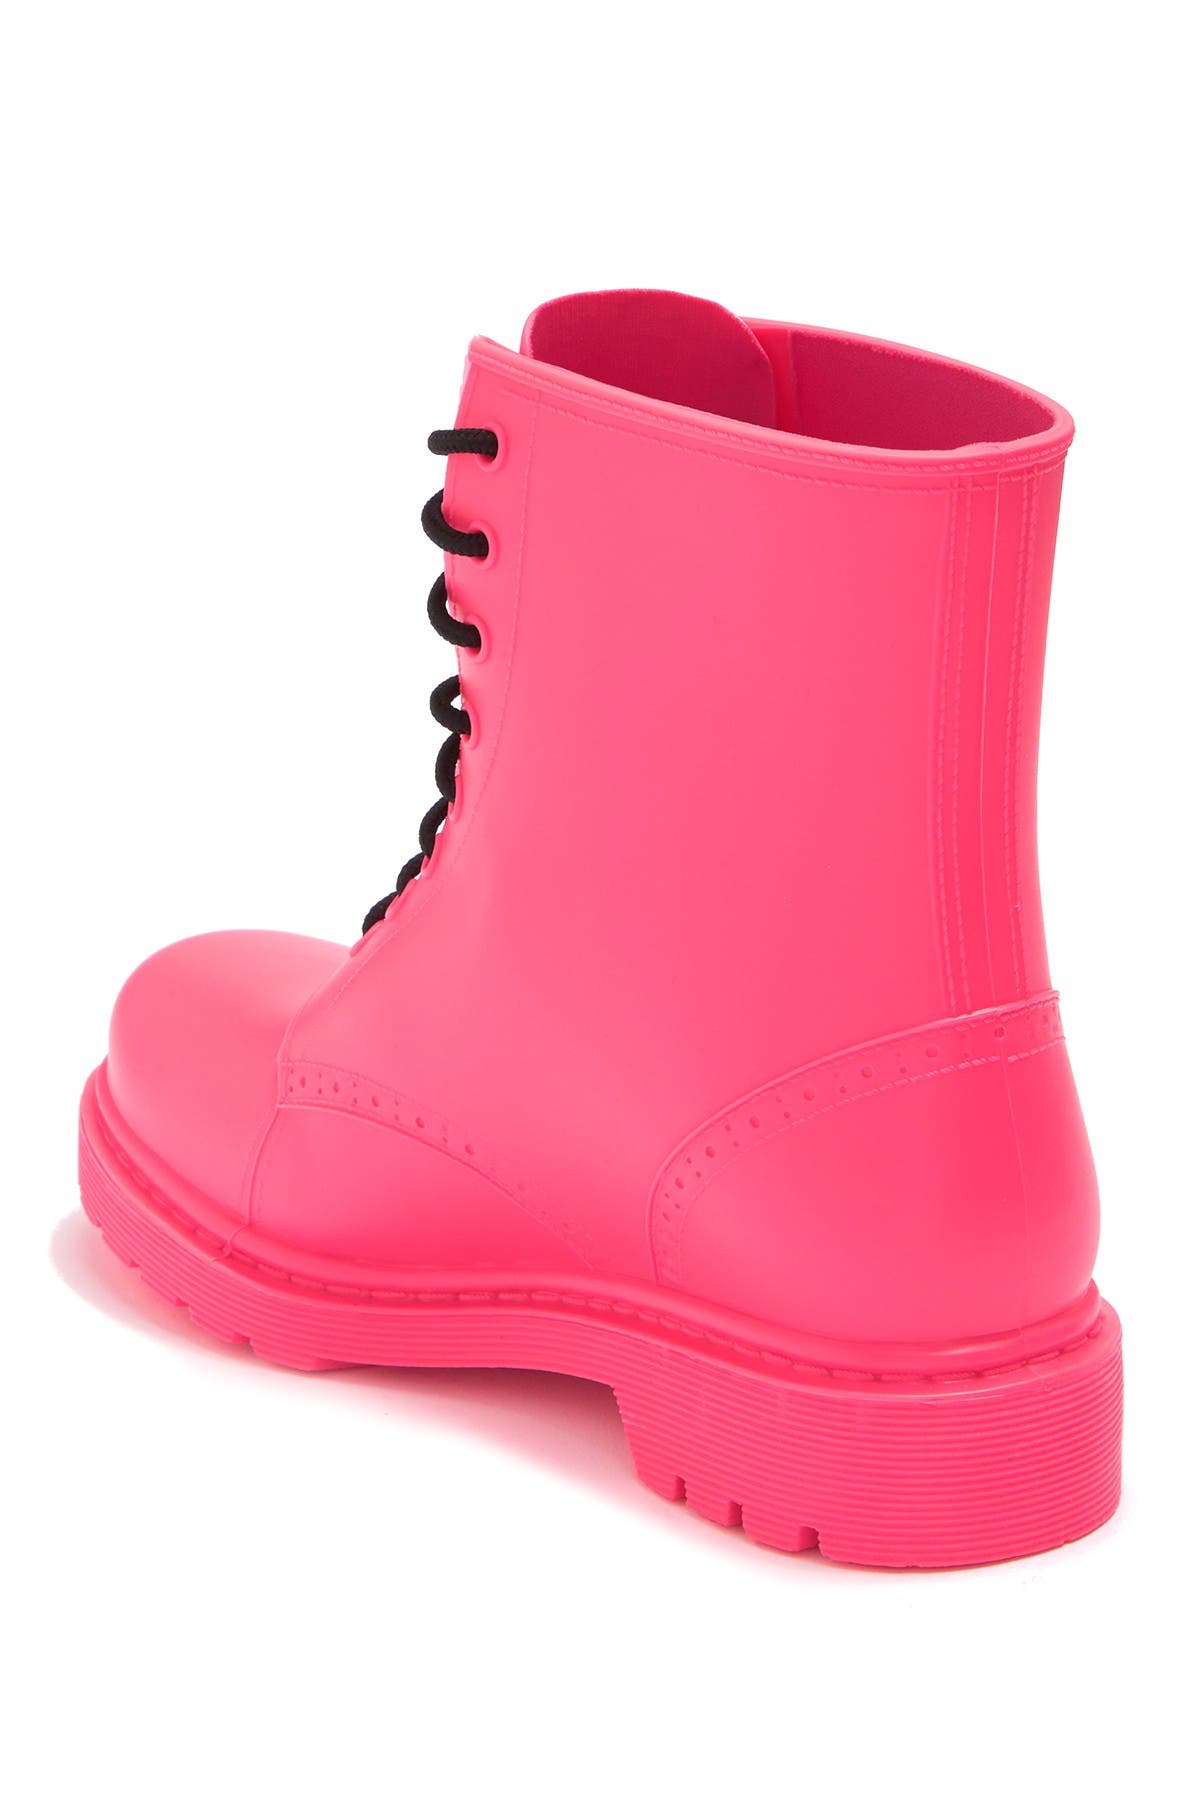 madden girl rain boots